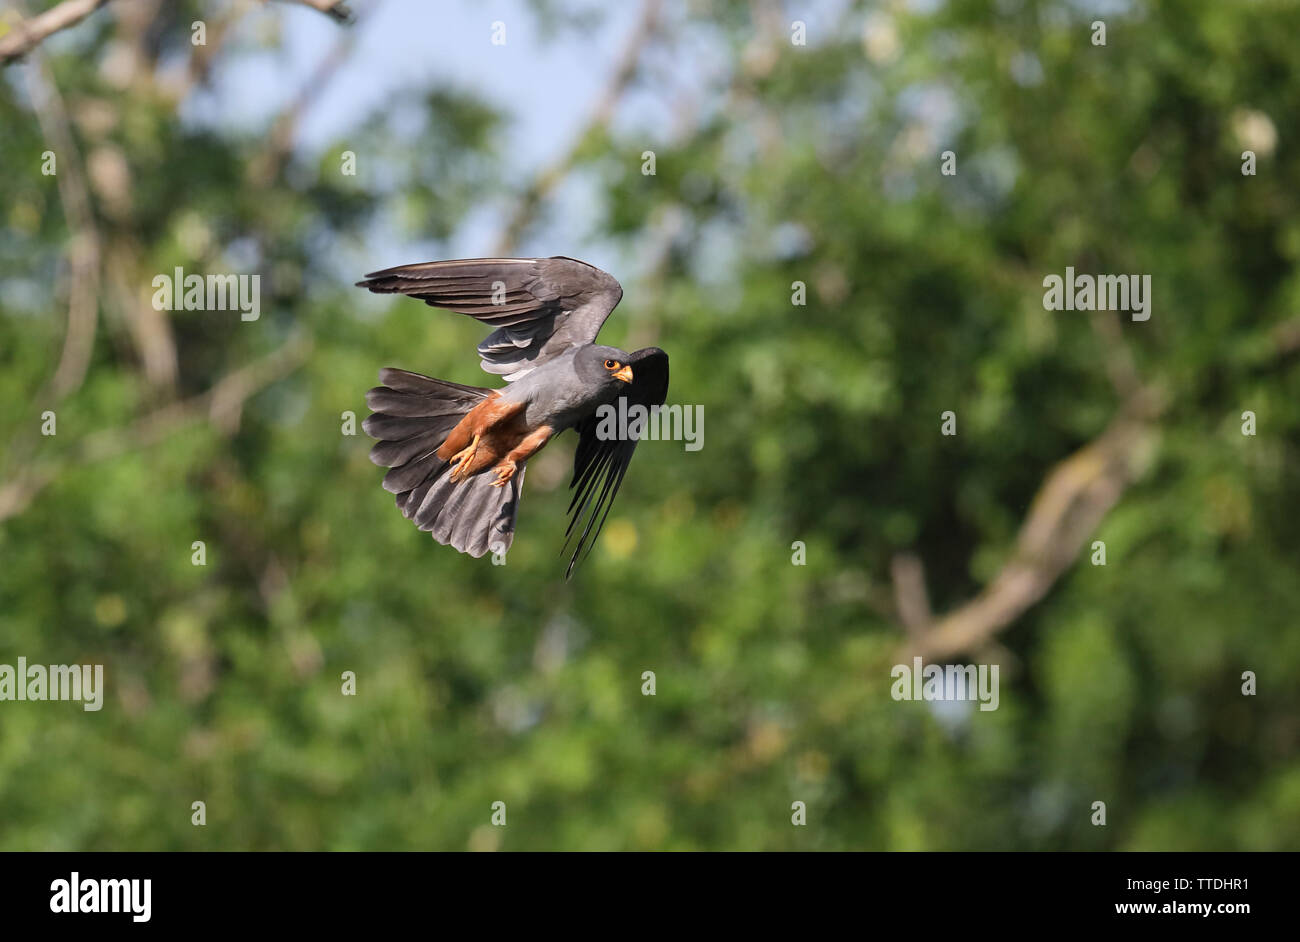 Macho rojo-footed falcon (Falco vespertinus) en vuelo. La especie está clasificada como "Casi Amenazada" en la Lista Roja de la UICN. Fotografiado en Hortobagy, HU Foto de stock